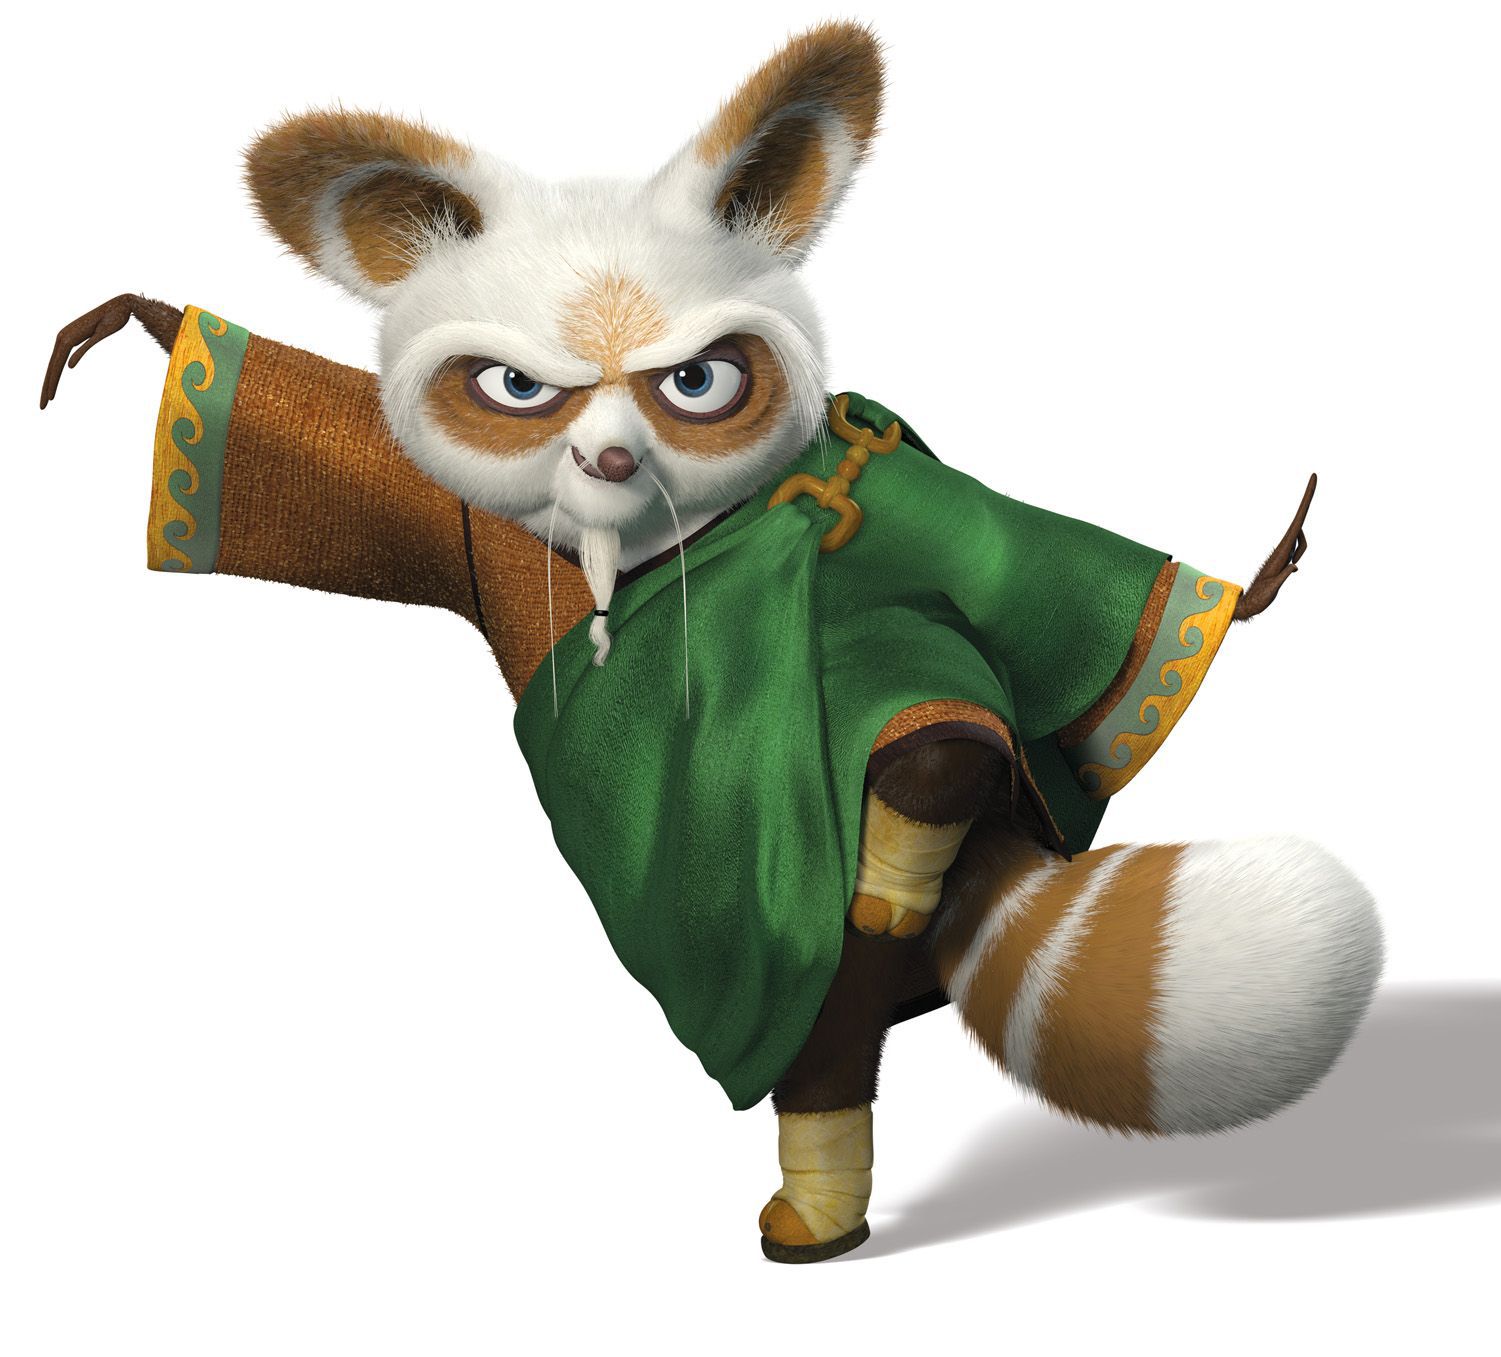 Kung Fu Panda 3 Movie HD Wallpaper Image for Lumia - Cartoons ...